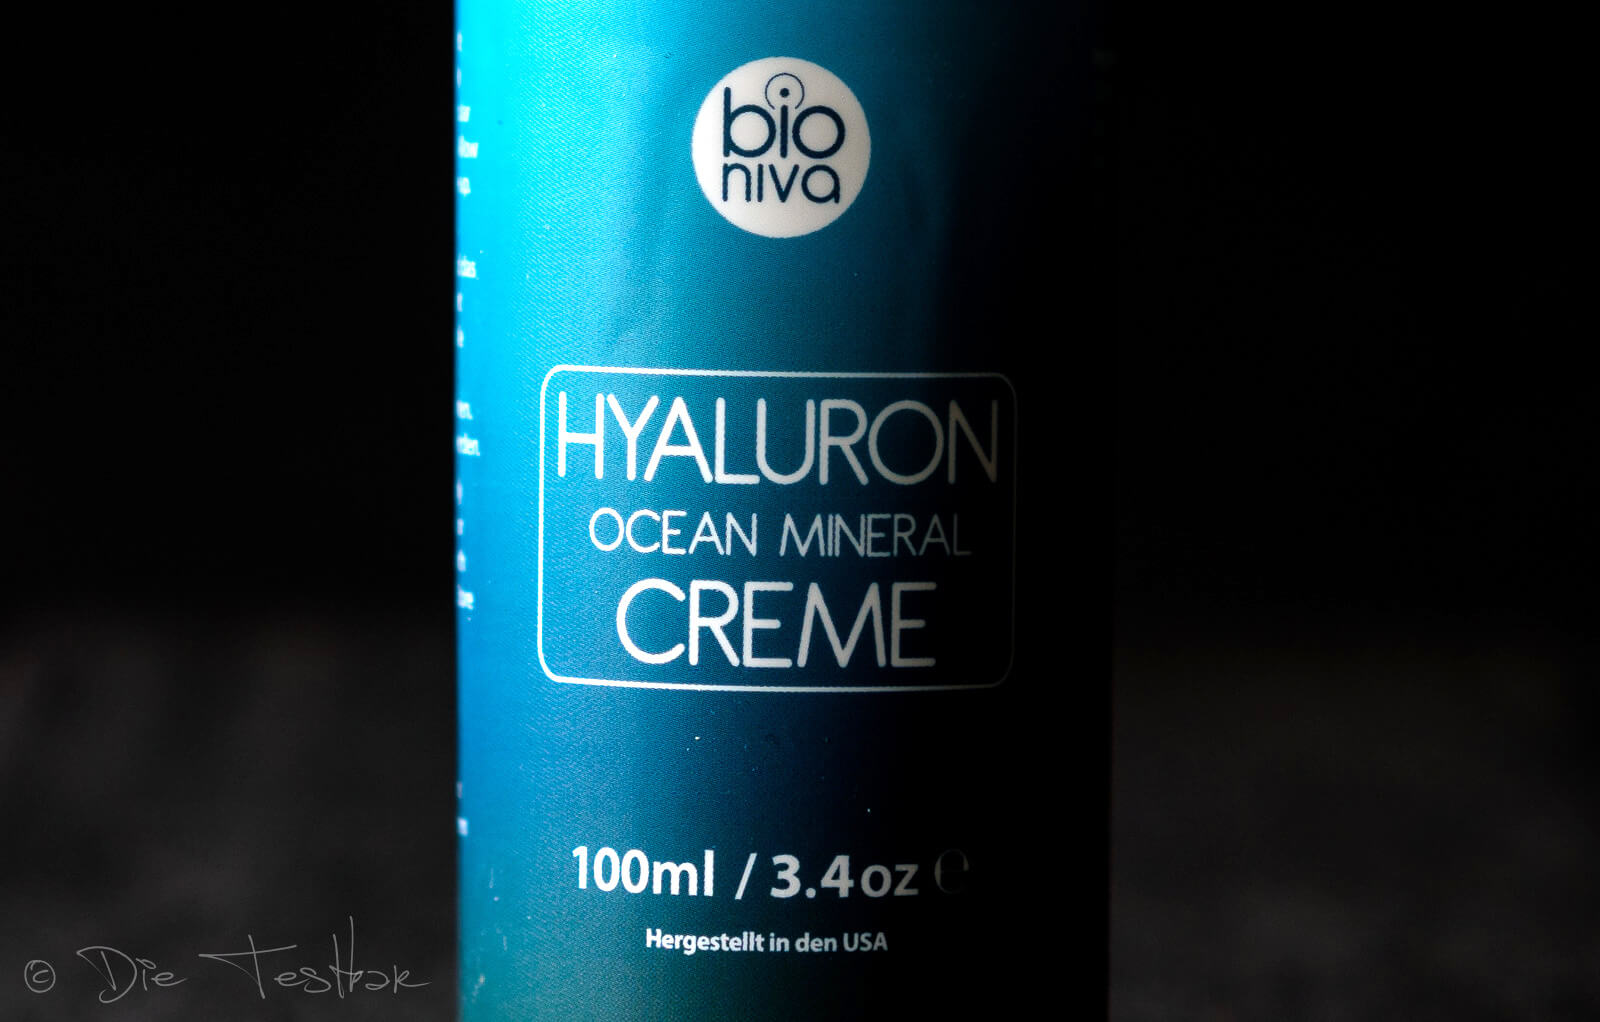 Hyaluron Ocean Mineral Creme von Bioniva